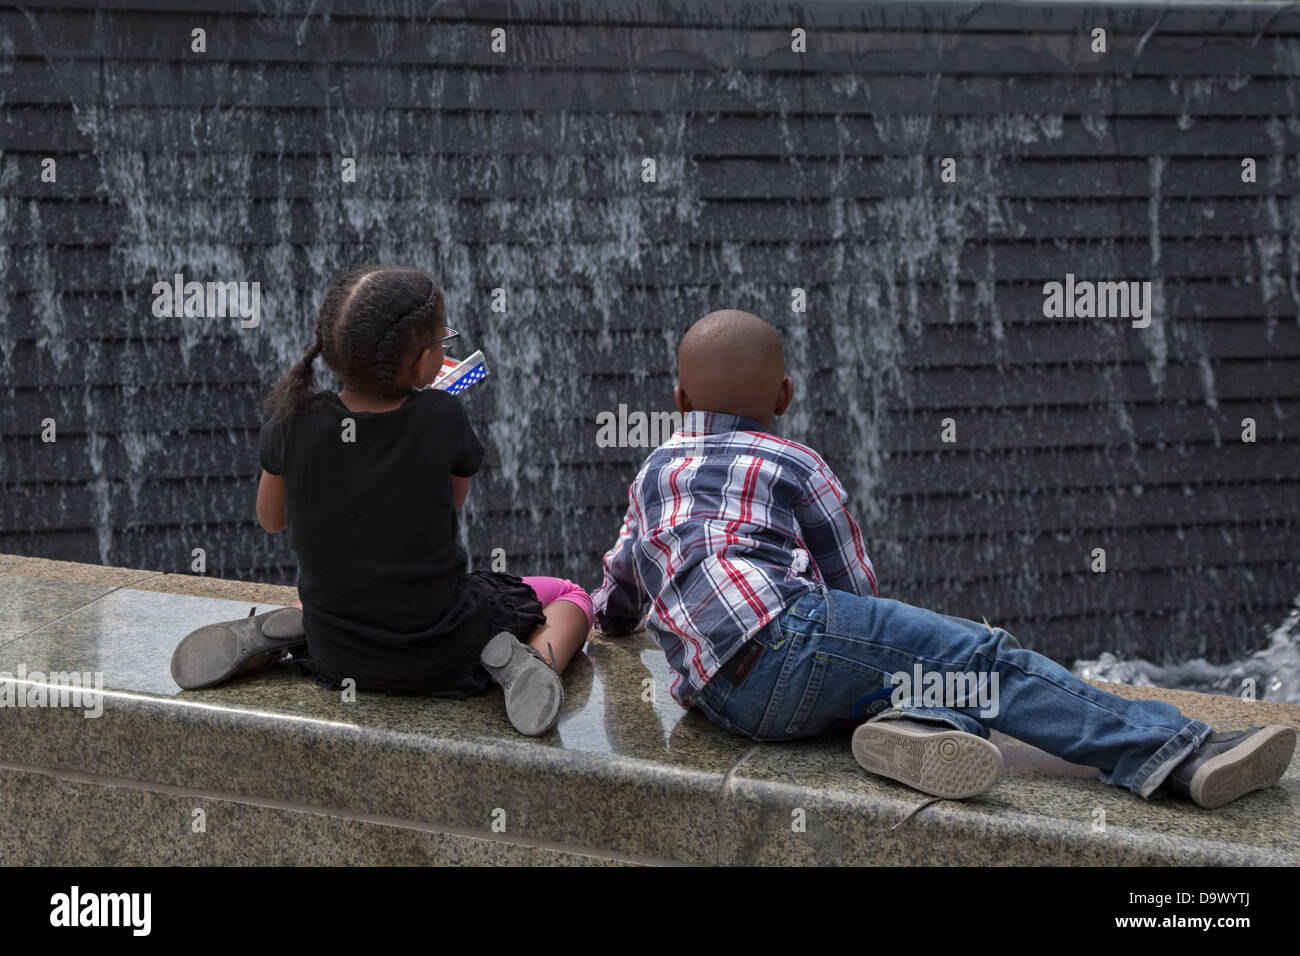 Detroit, Michigan - Los niños miran una fuente en el Campus Martius Park. Foto de stock